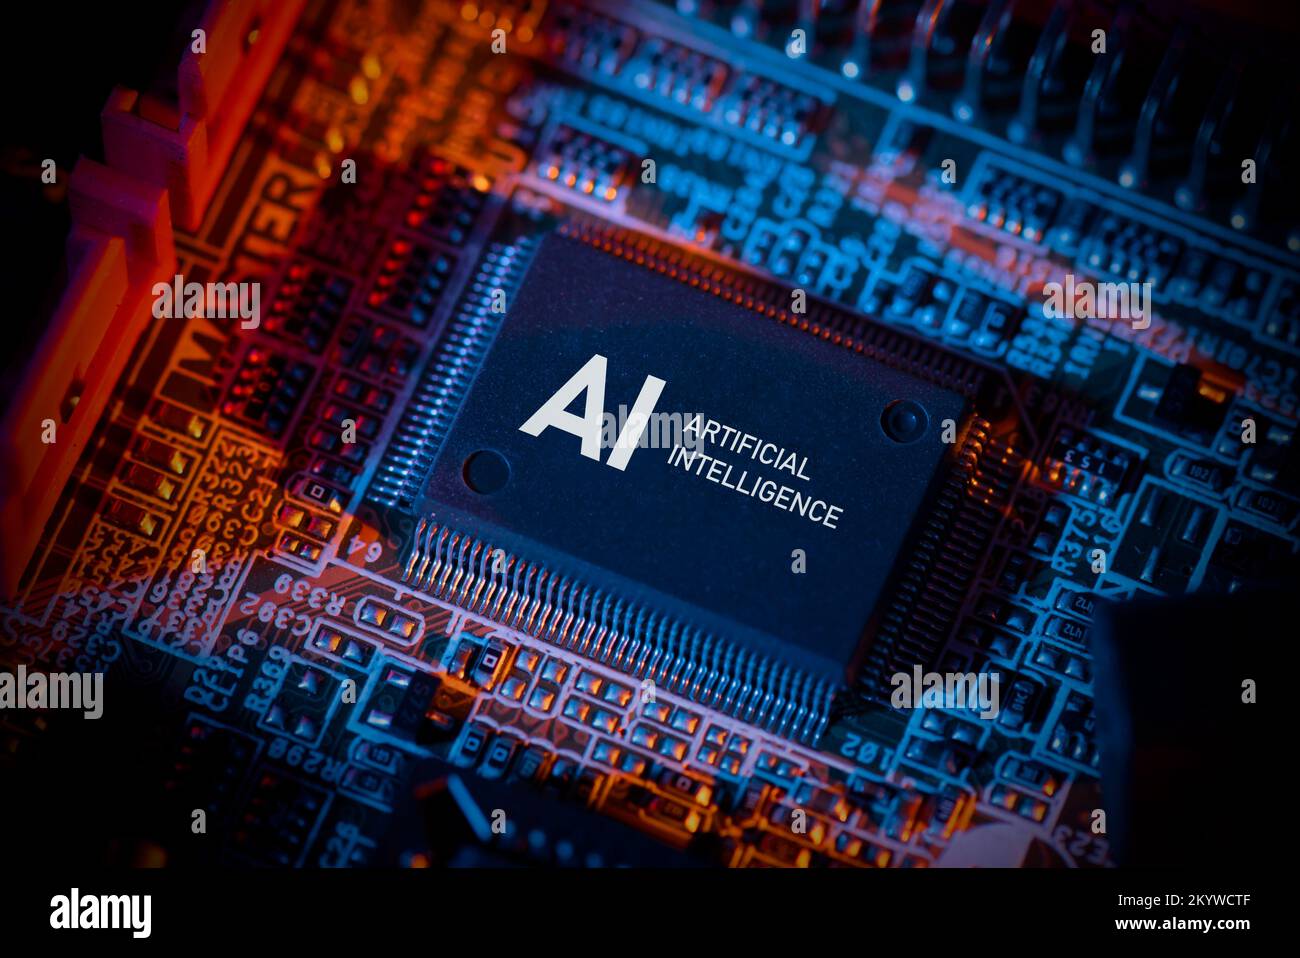 Concepto de inteligencia artificial con chip informático. Primer plano del microprocesador AI. Foto de stock